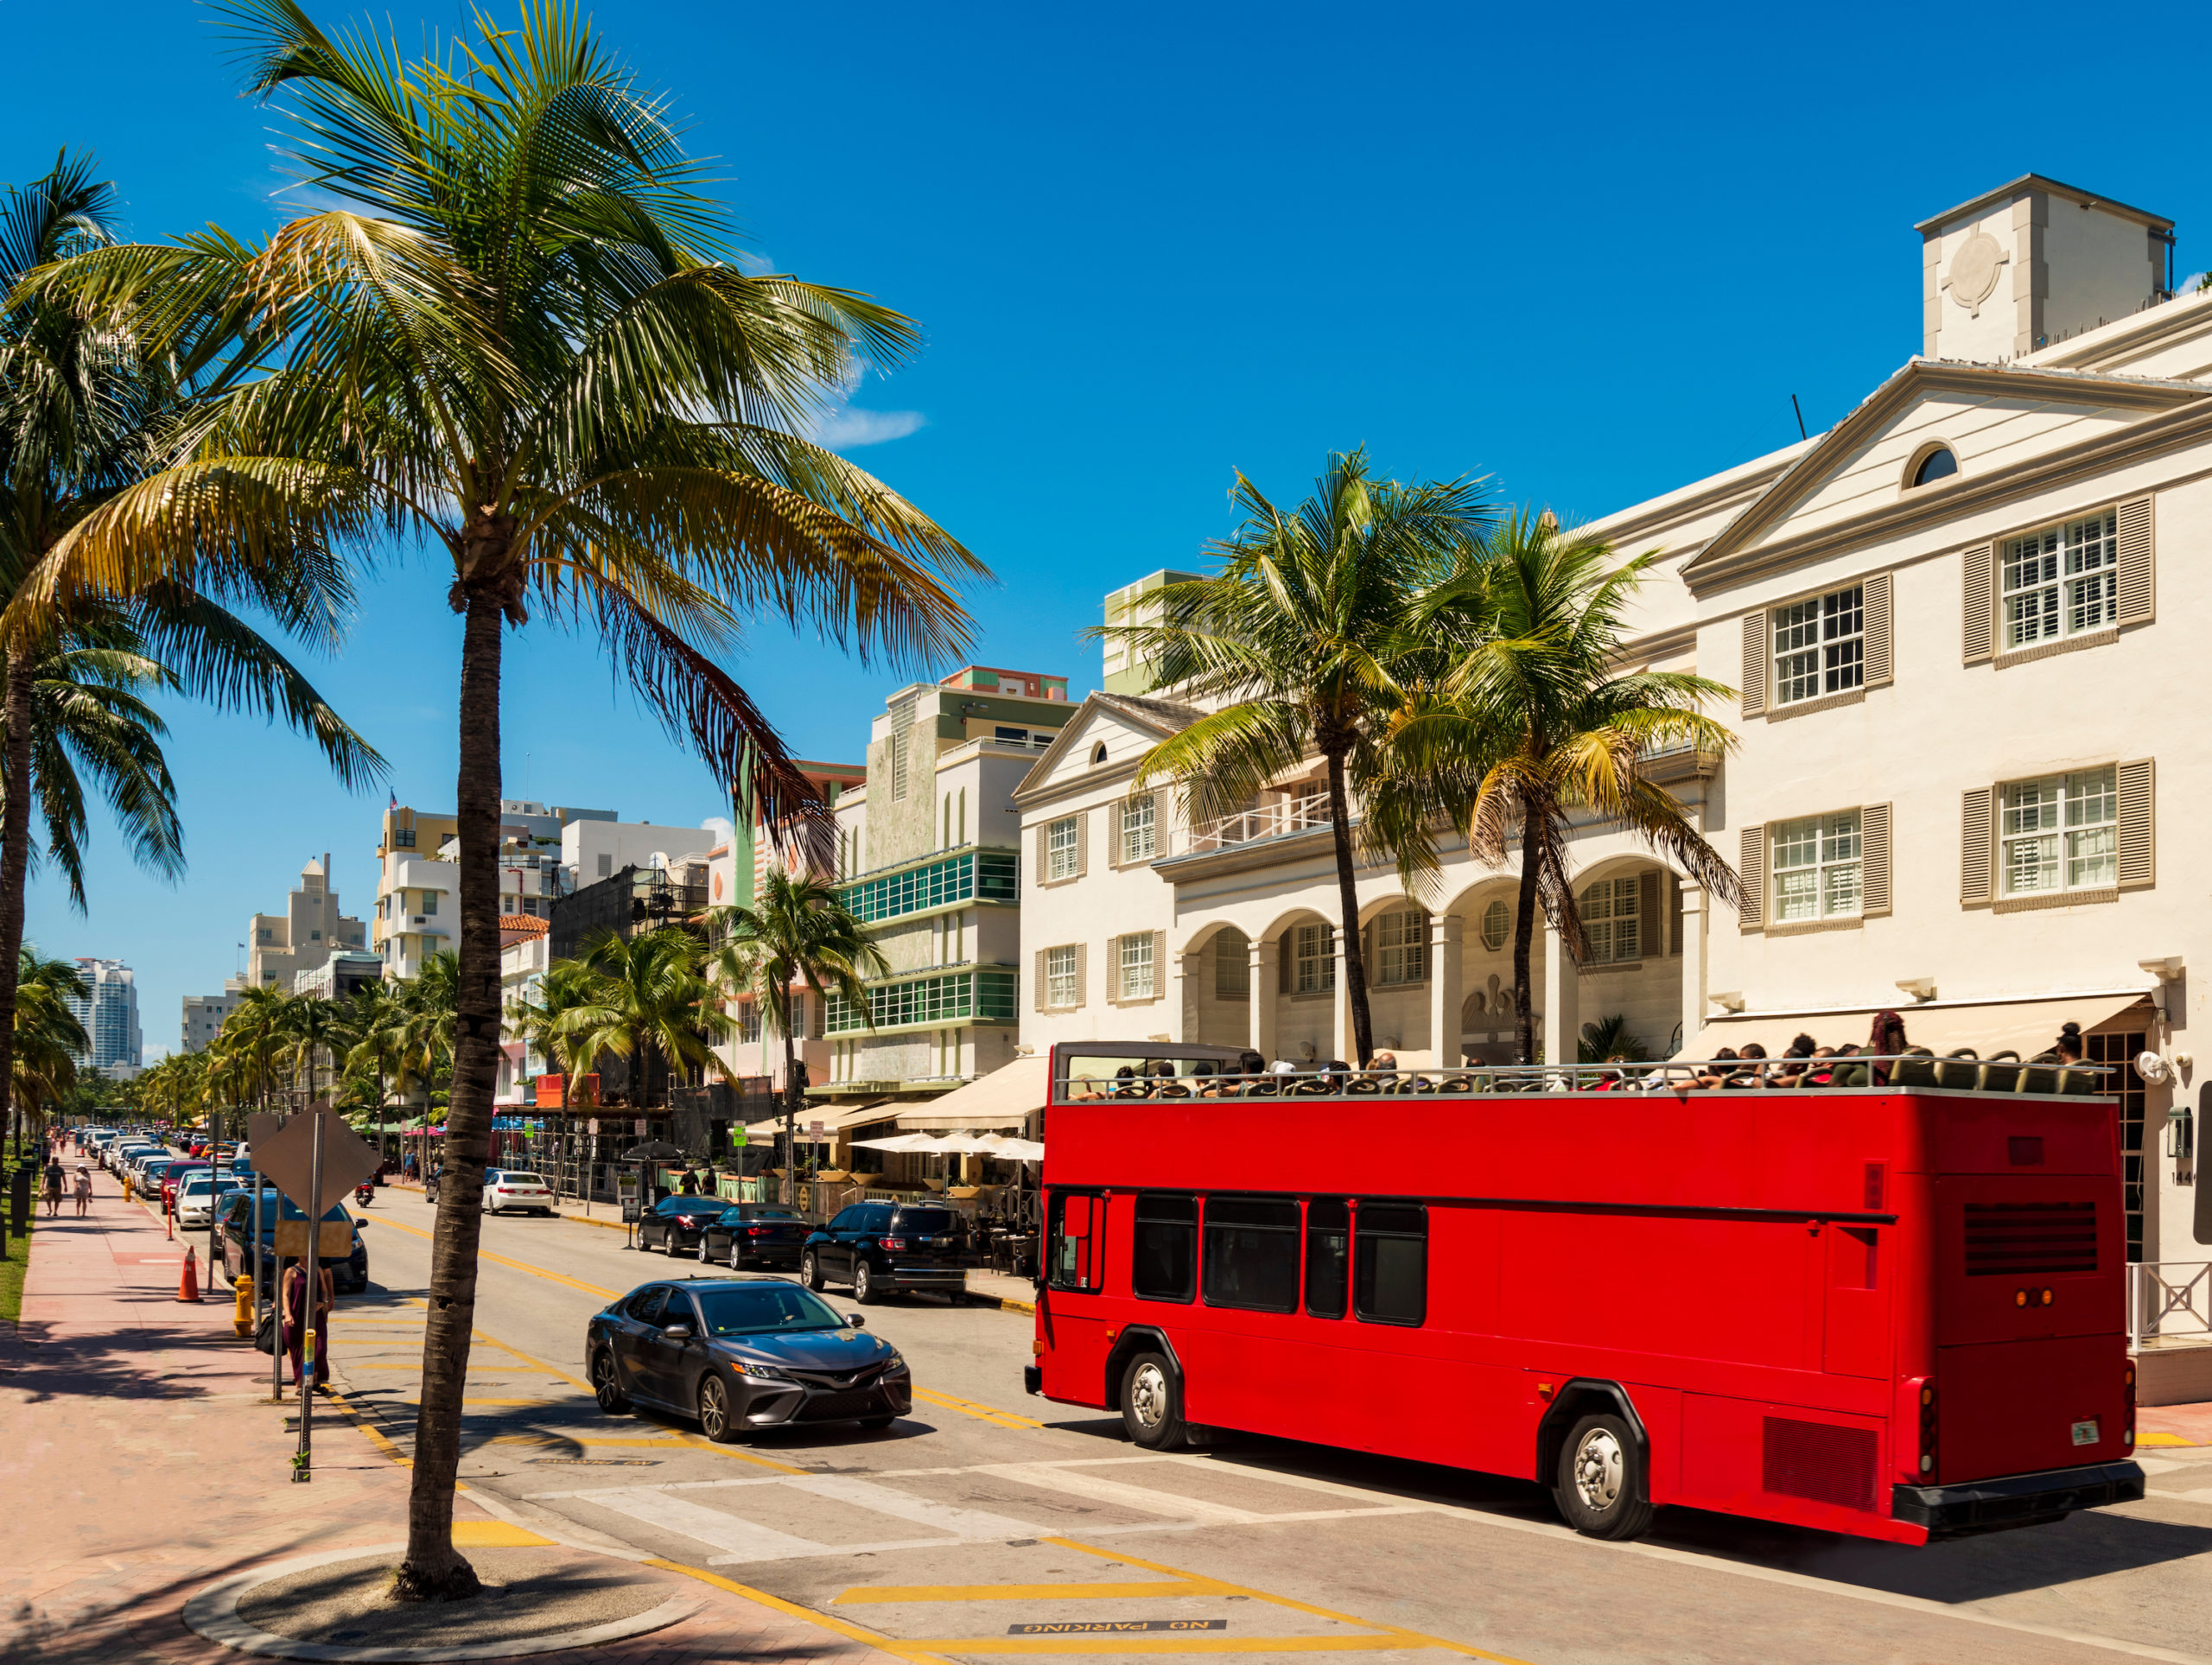 Autobus turistico por Miami